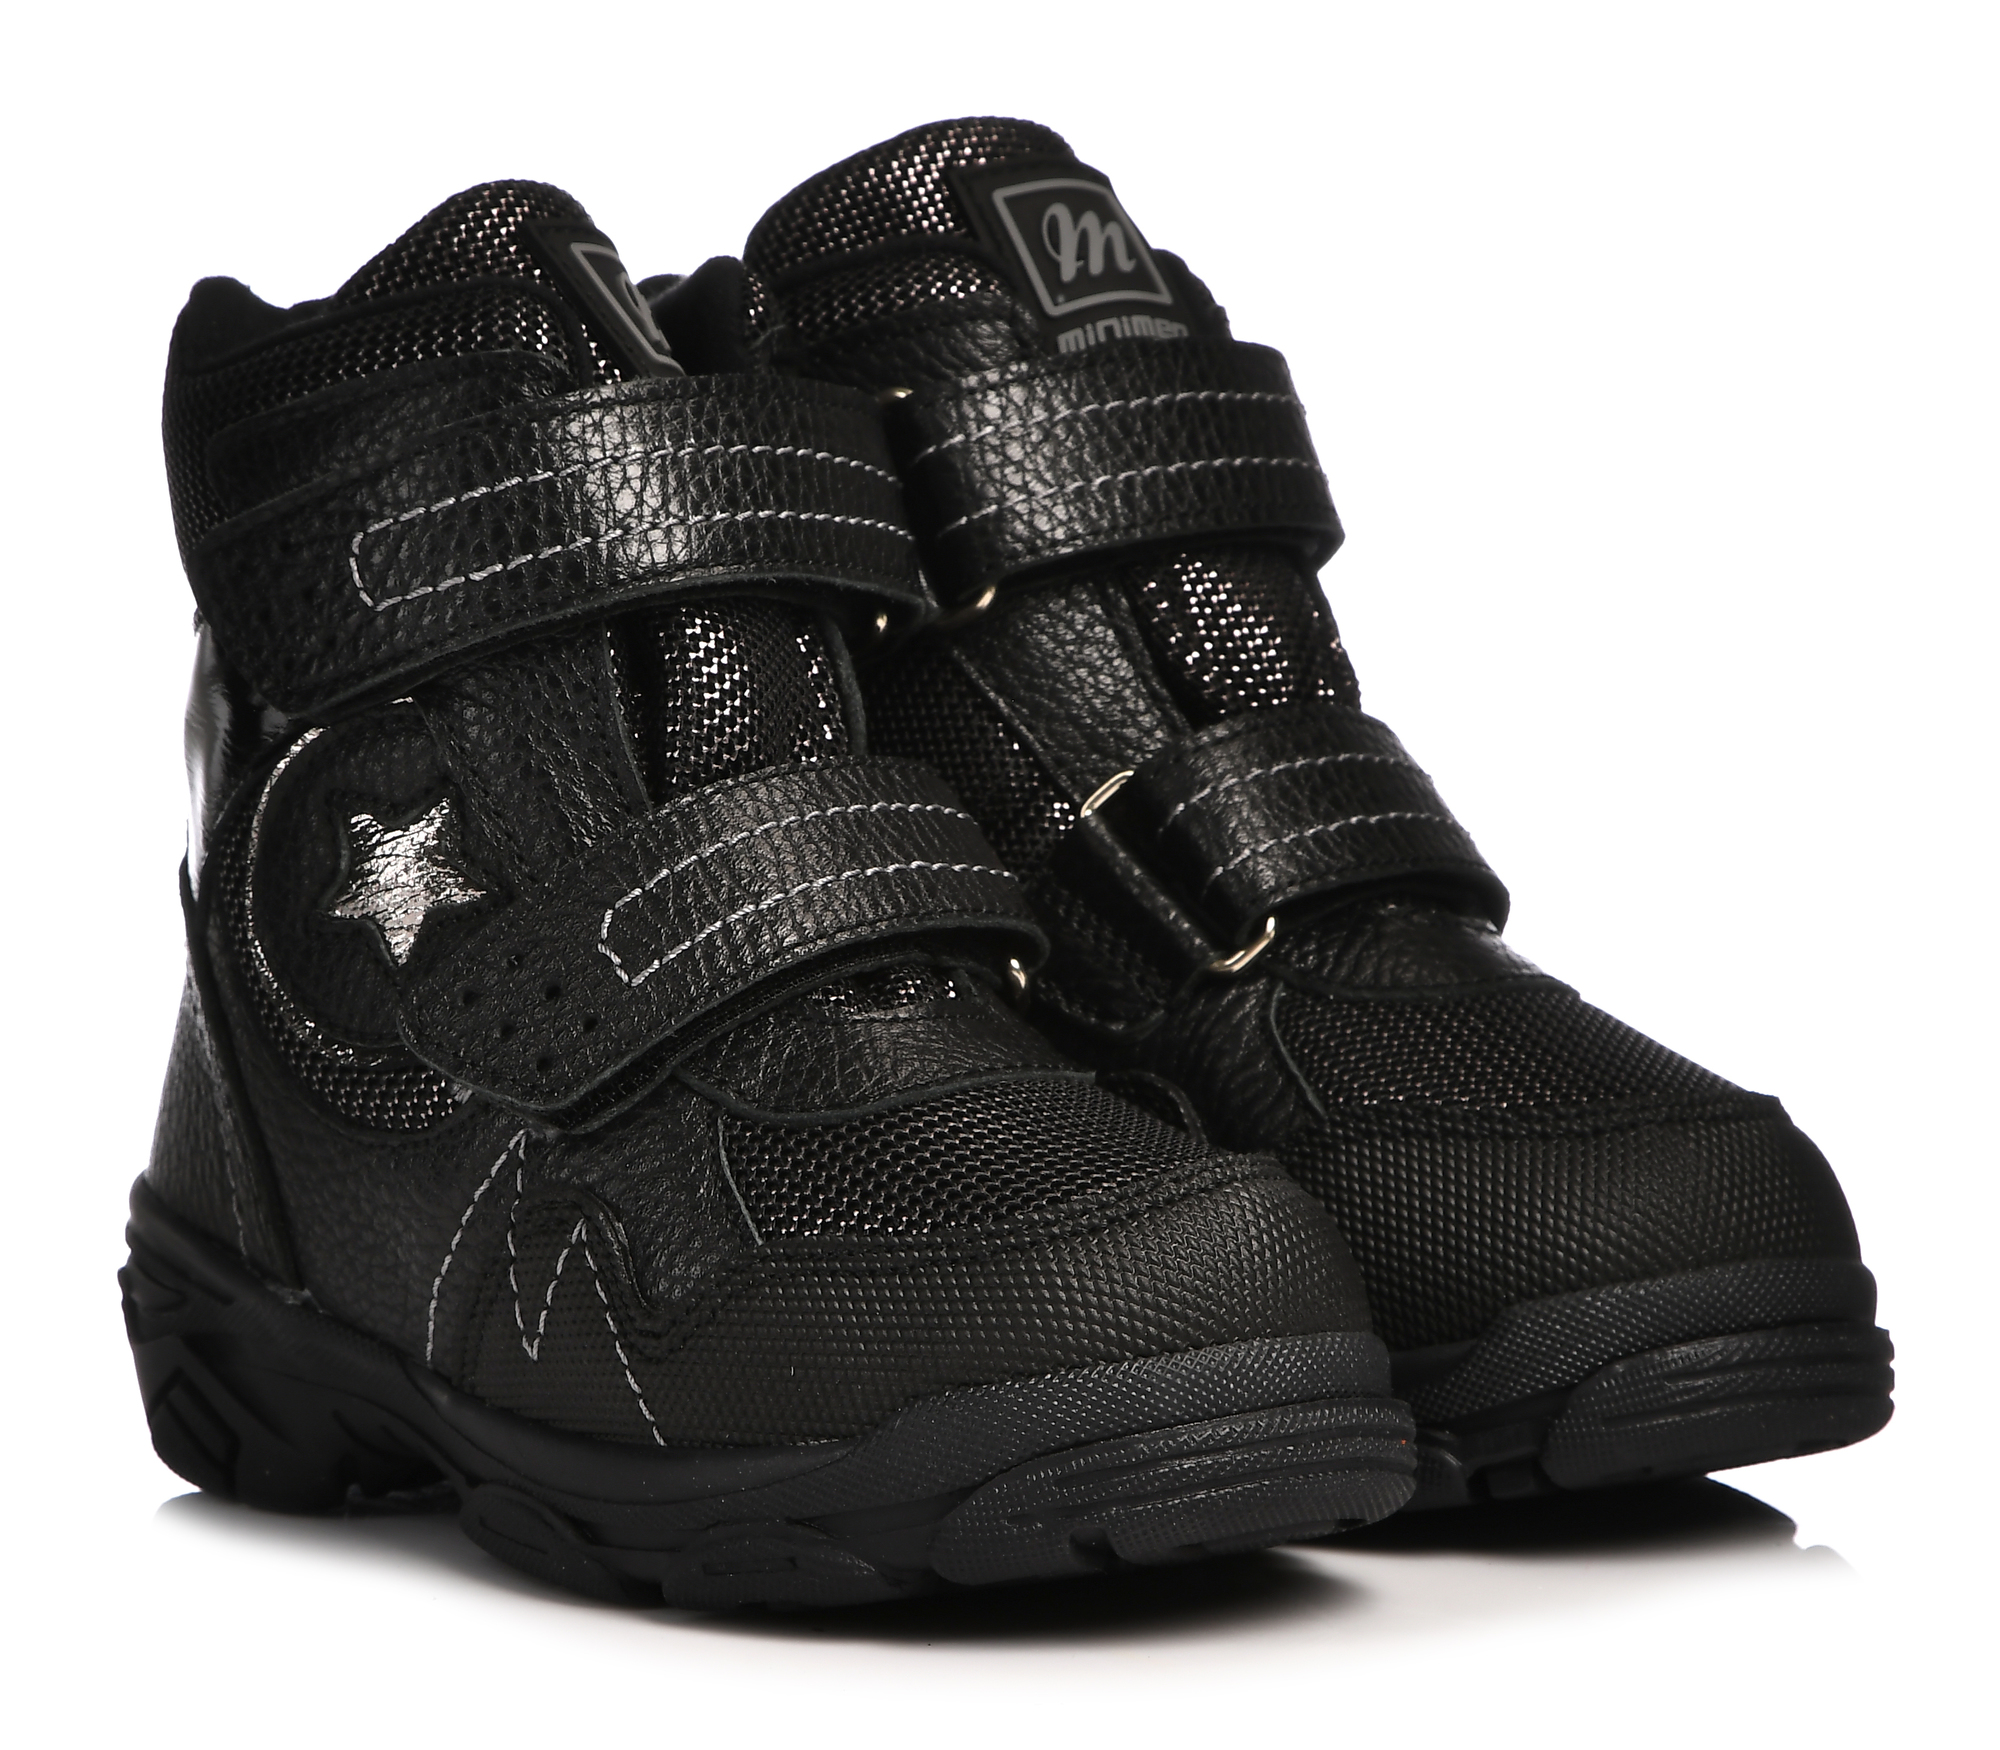 Ботинки Minimen для девочек, чёрные, размер 28, 2658-63-23B-05